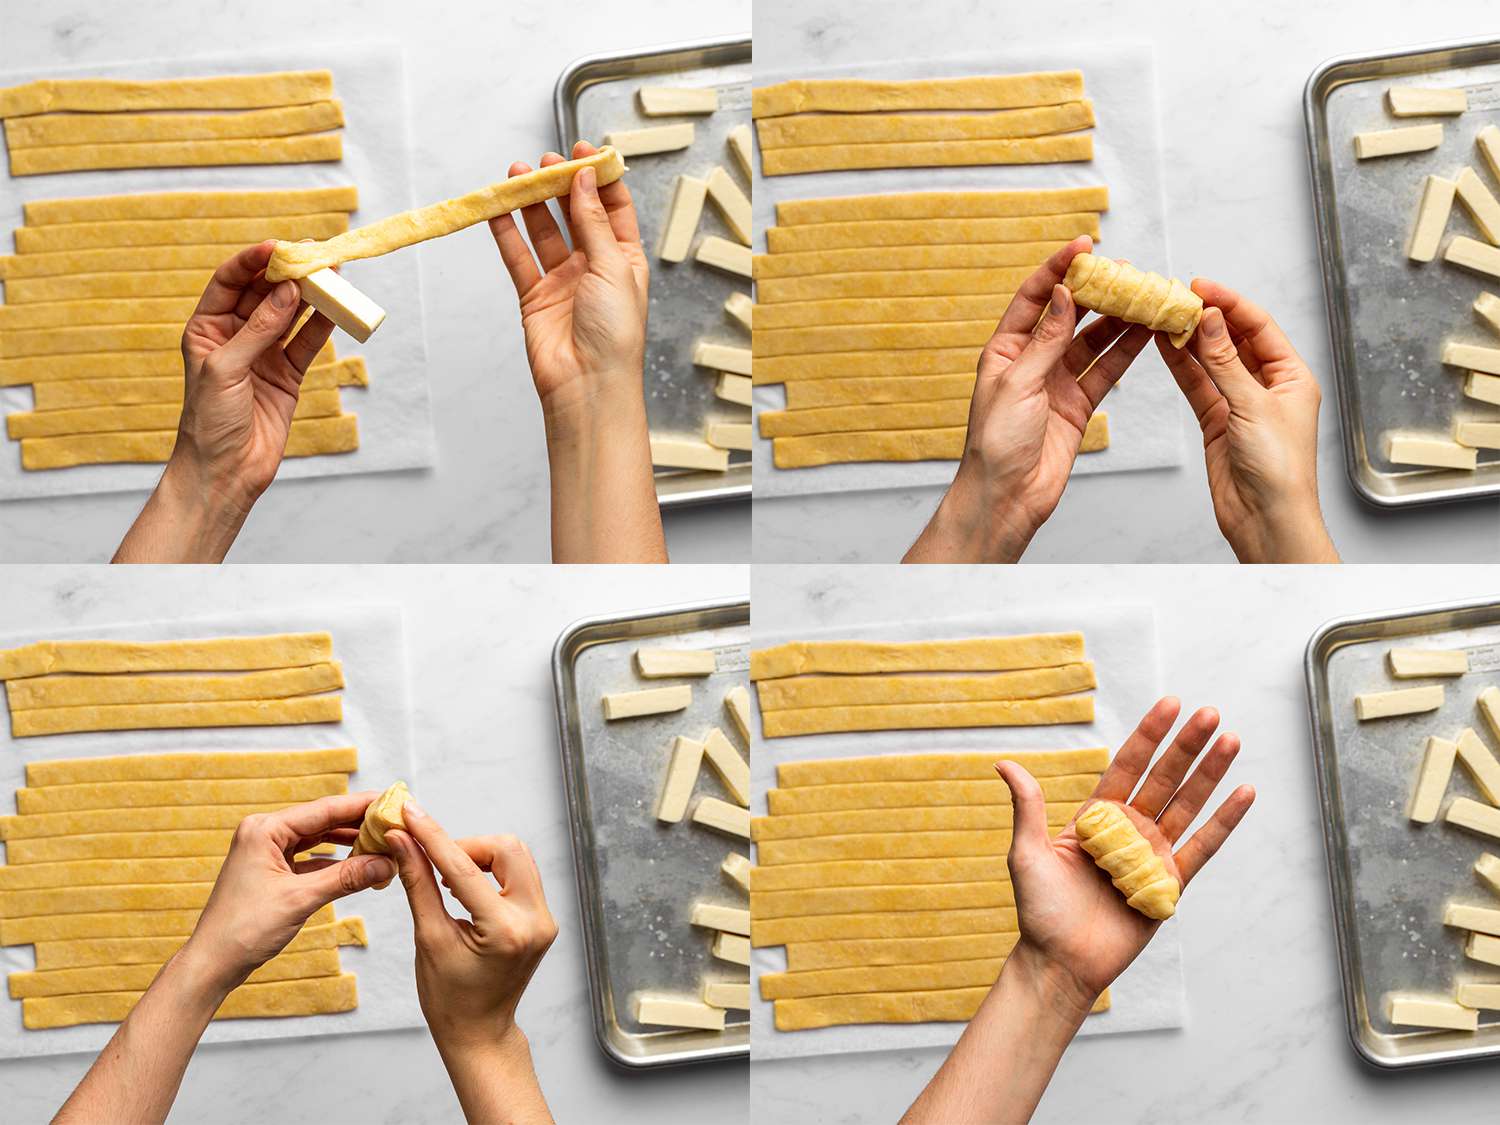 一幅四幅图片的拼贴画，展示了一块奶酪被一条切好的面团包裹着。